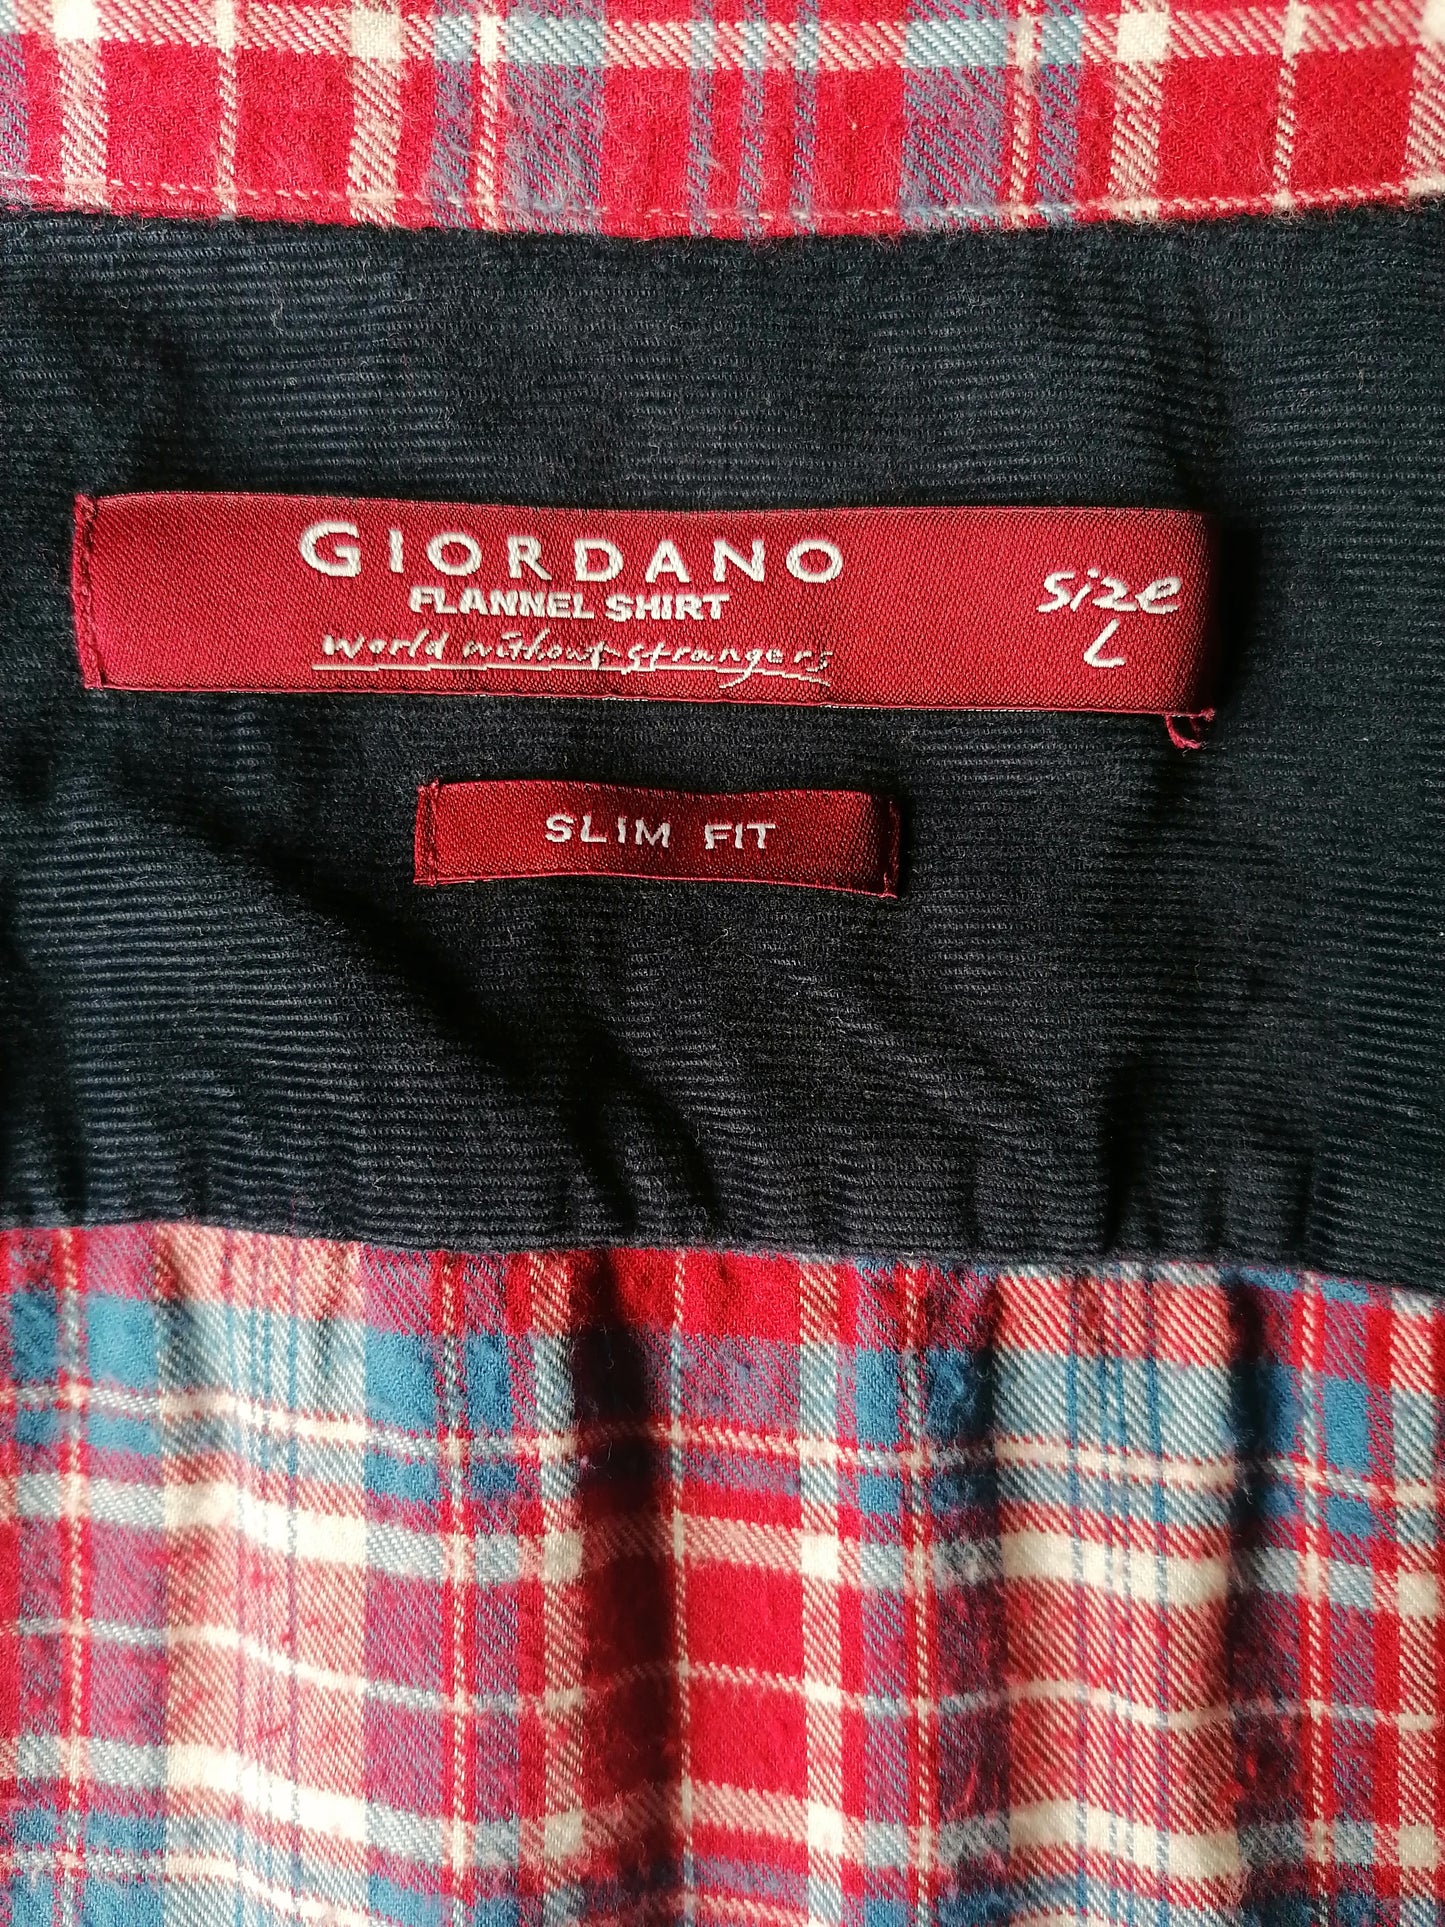 Giordano Flanellen overhemd met rib mouwen. Blauw Rood geruit. Maat L. Slim Fit.